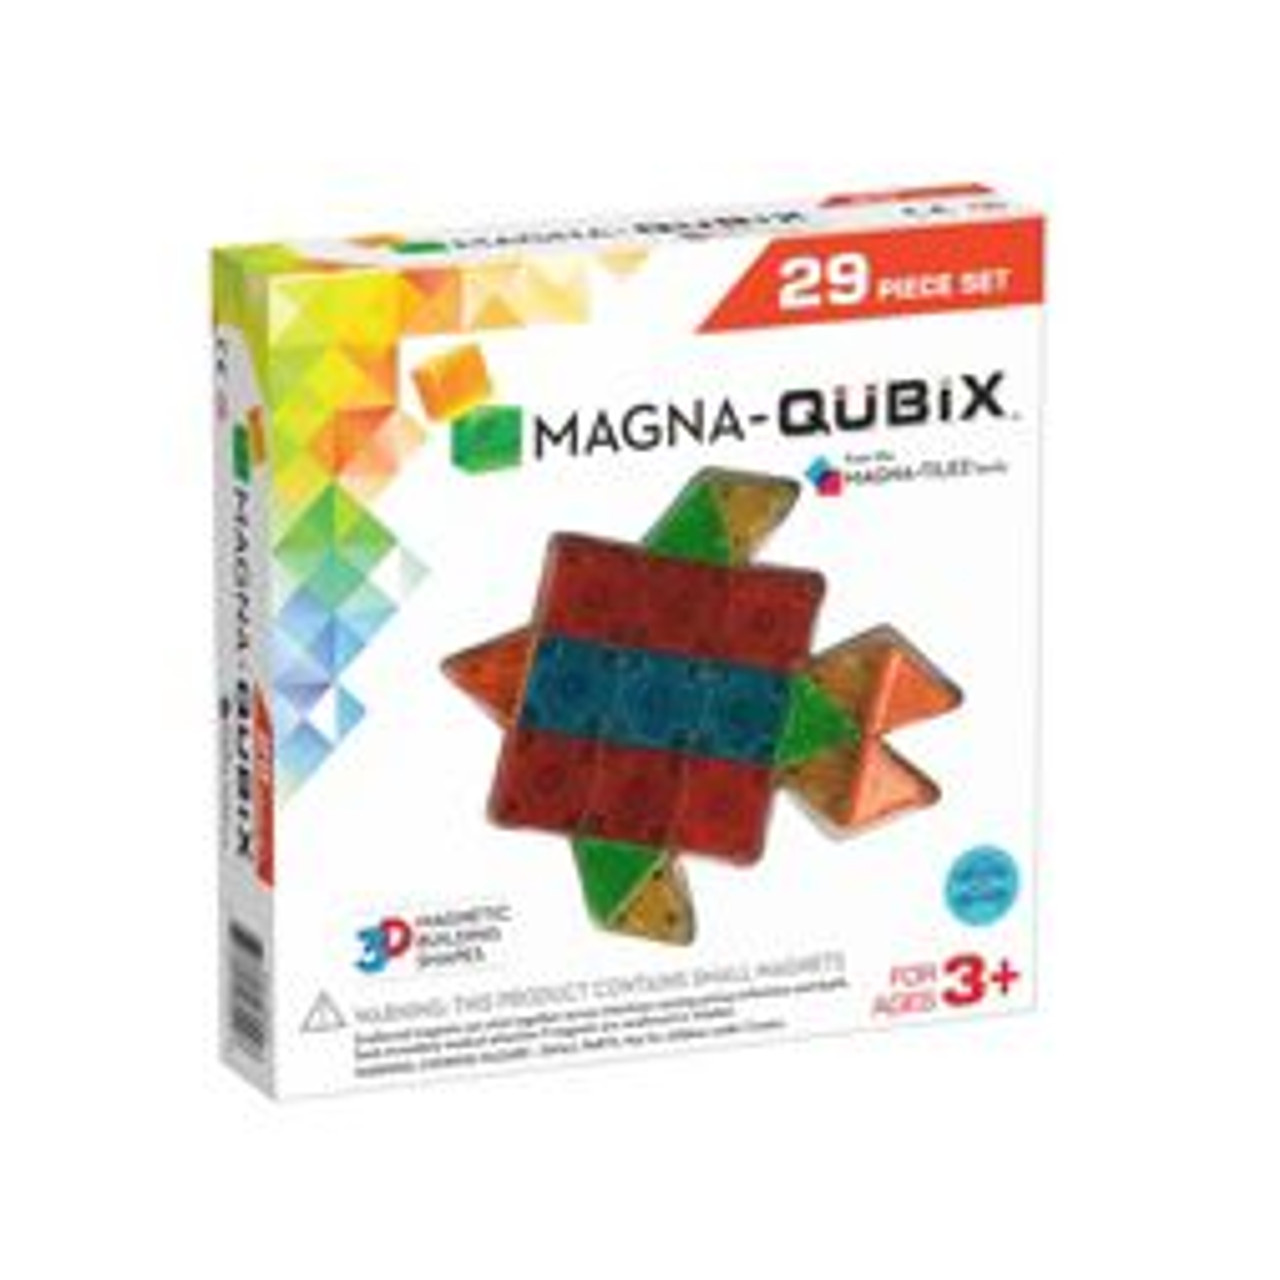 MAGNA-QUBIX 29 PCS